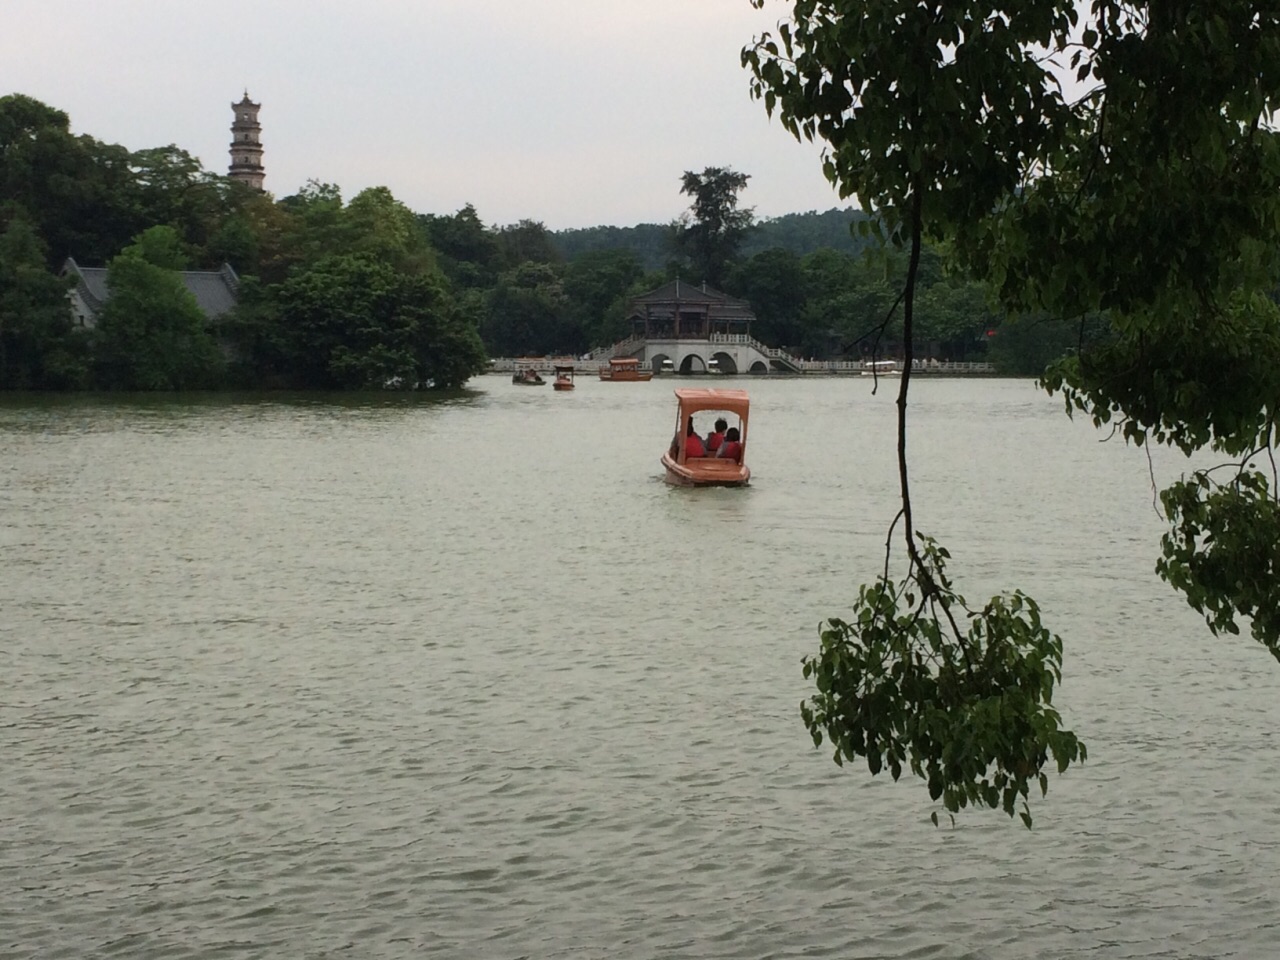 惠州西湖